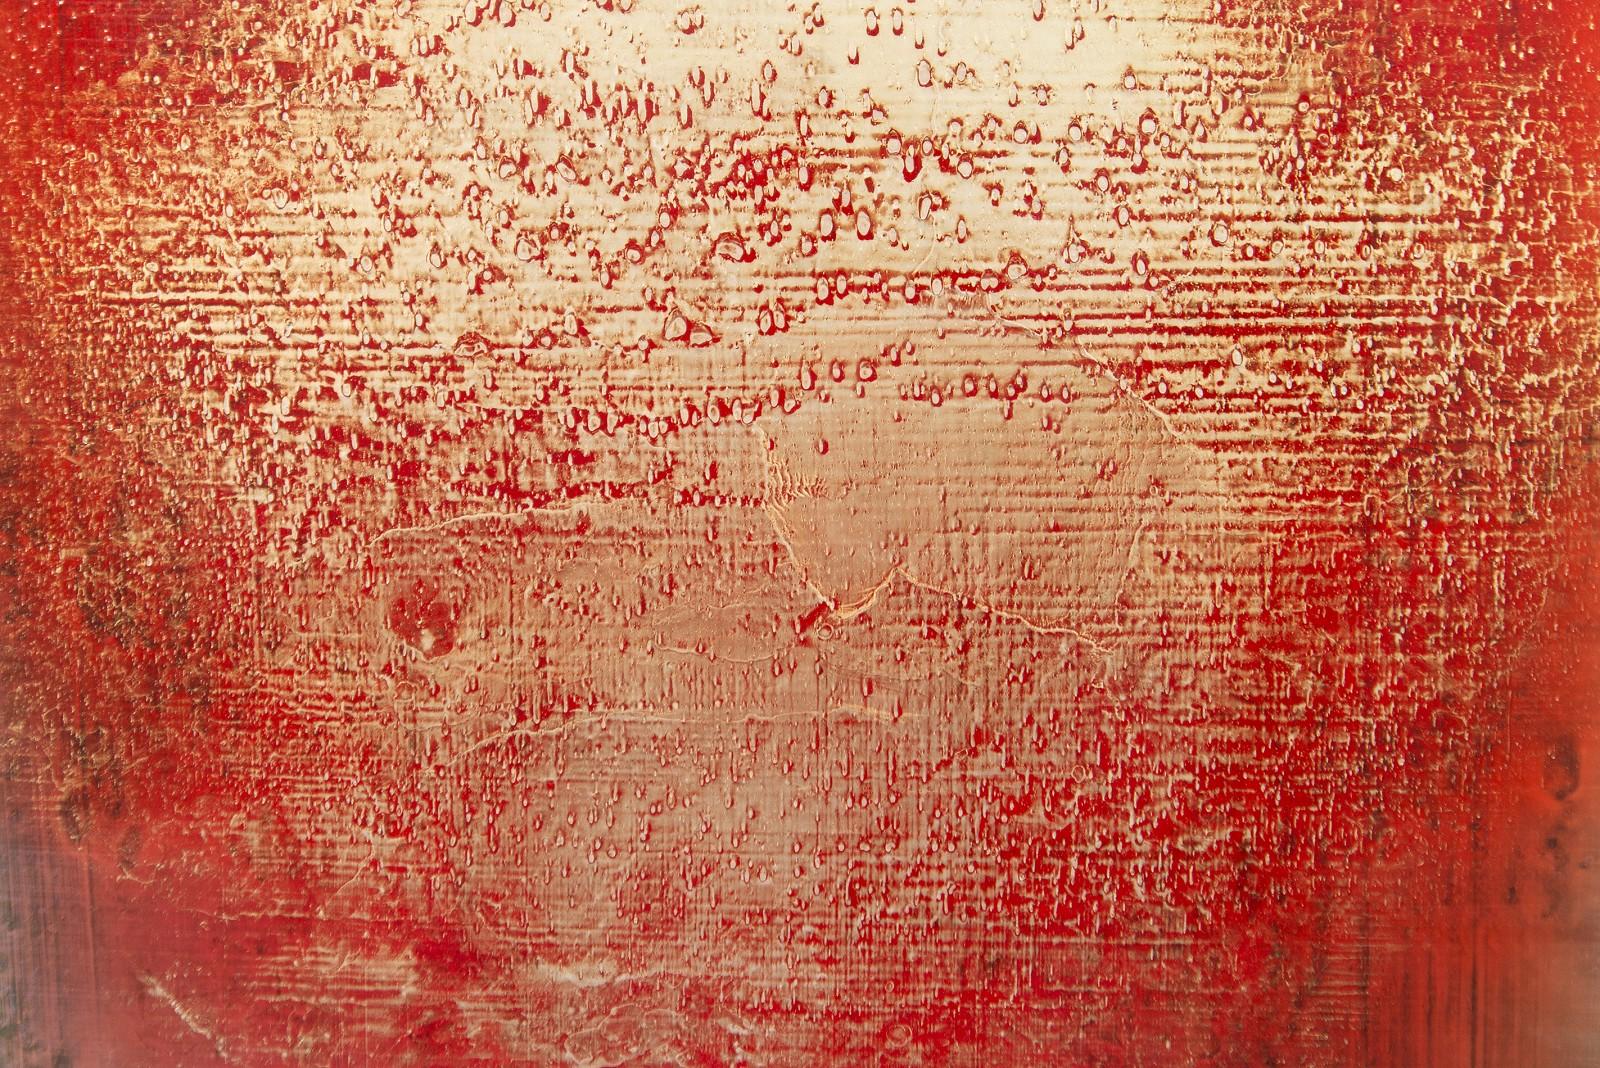 Dans cette nouvelle œuvre magnifique d'Alice Teichert, un symbole universel de l'amour - l'image des flammes semble exploser de la toile dans des teintes dorées sur un fond rouge, vert et bleu profond. L'écrivain américain Henry David Thoreau a